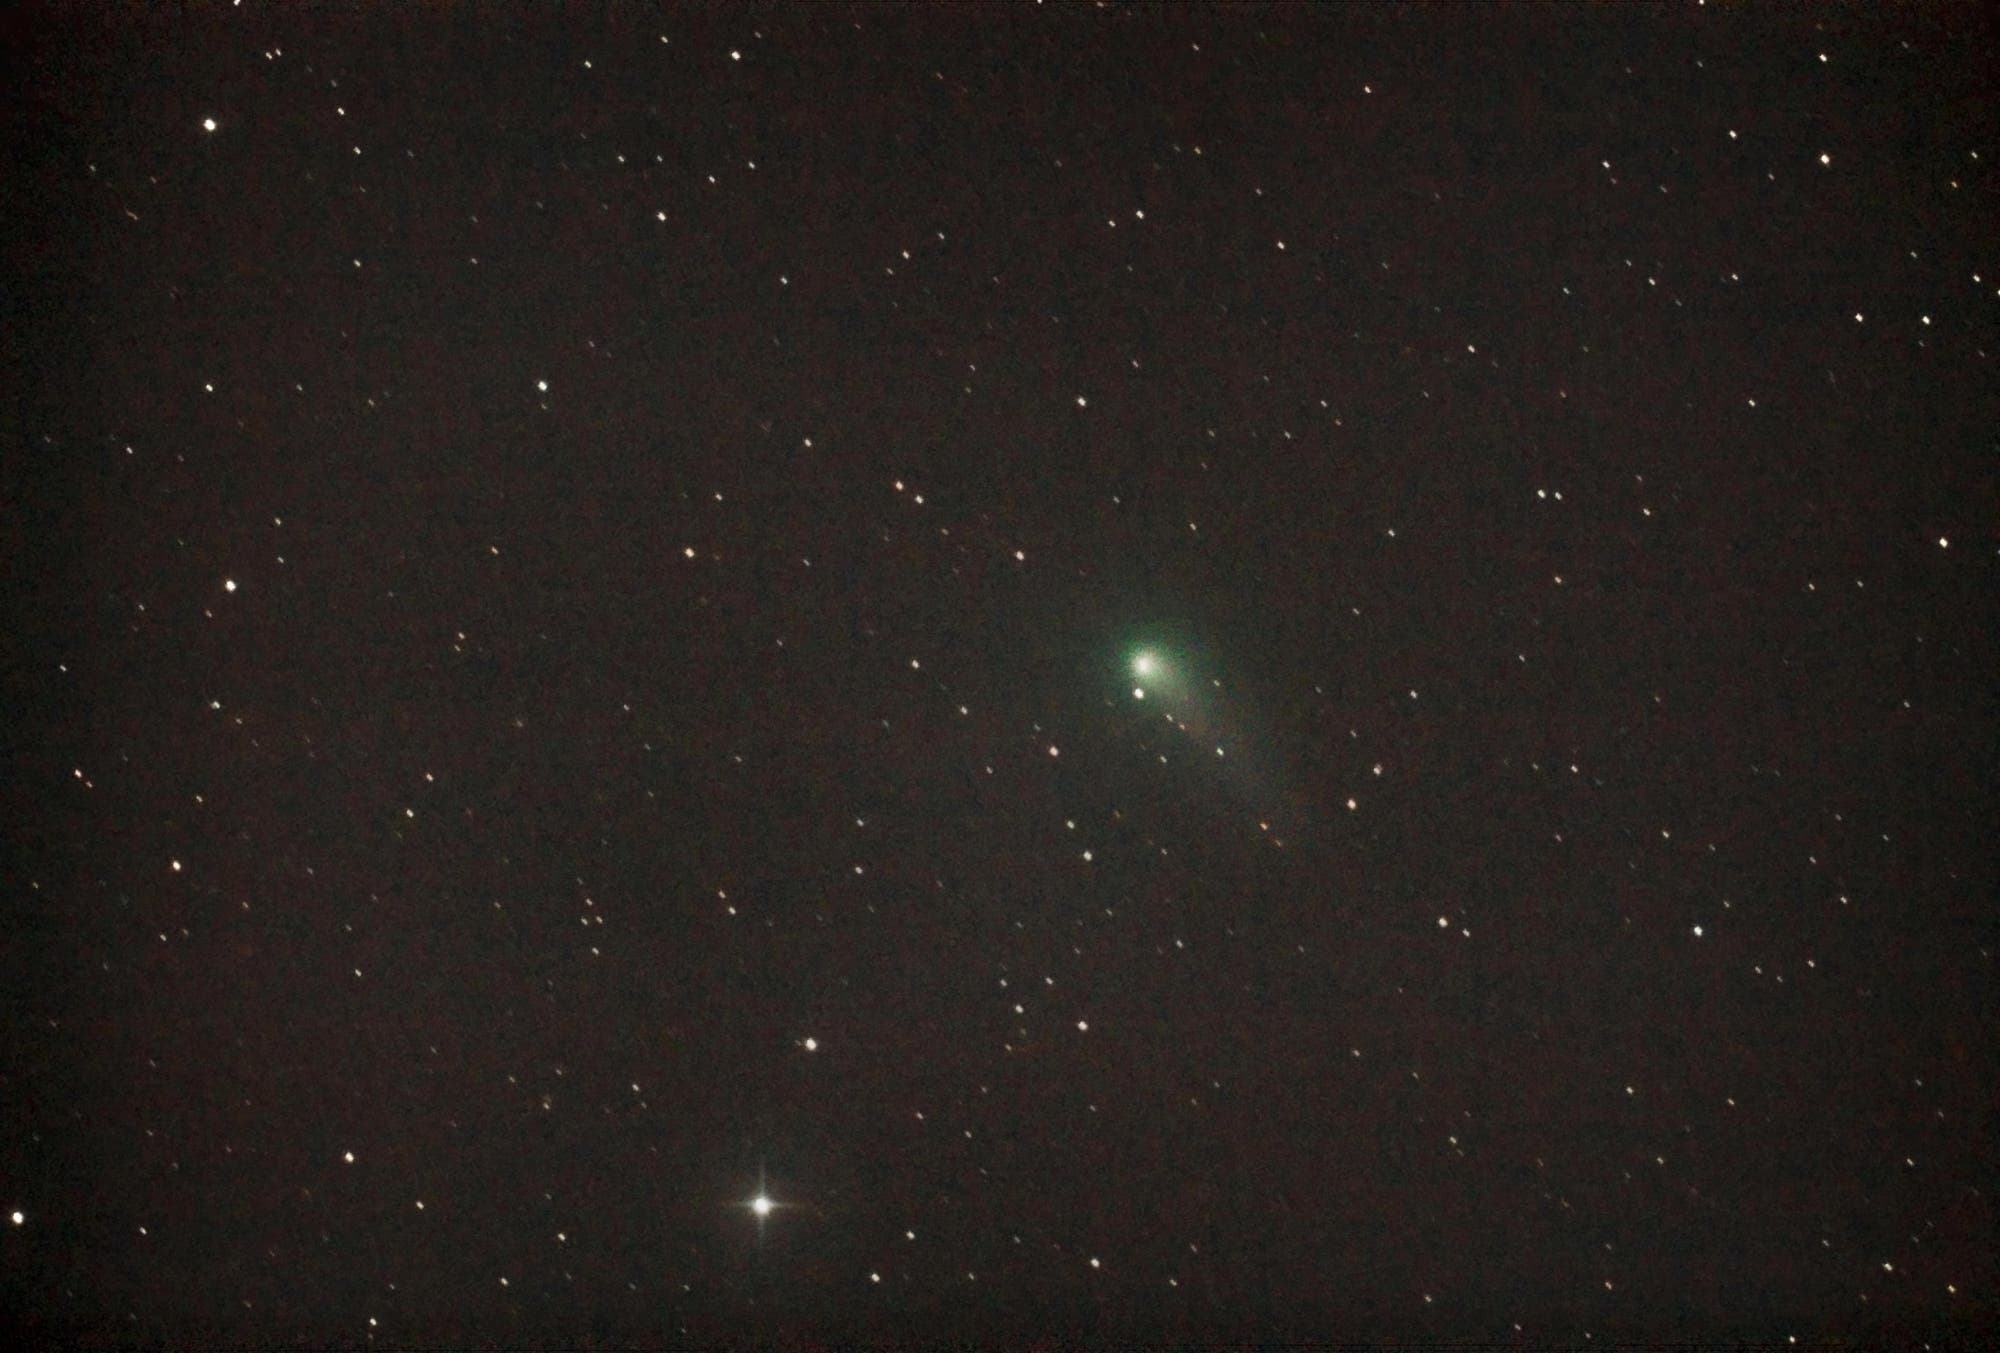 Komet C/2012 K1 (PANSTARRS) im Grenzberich Bärenhüter / Großer Bär